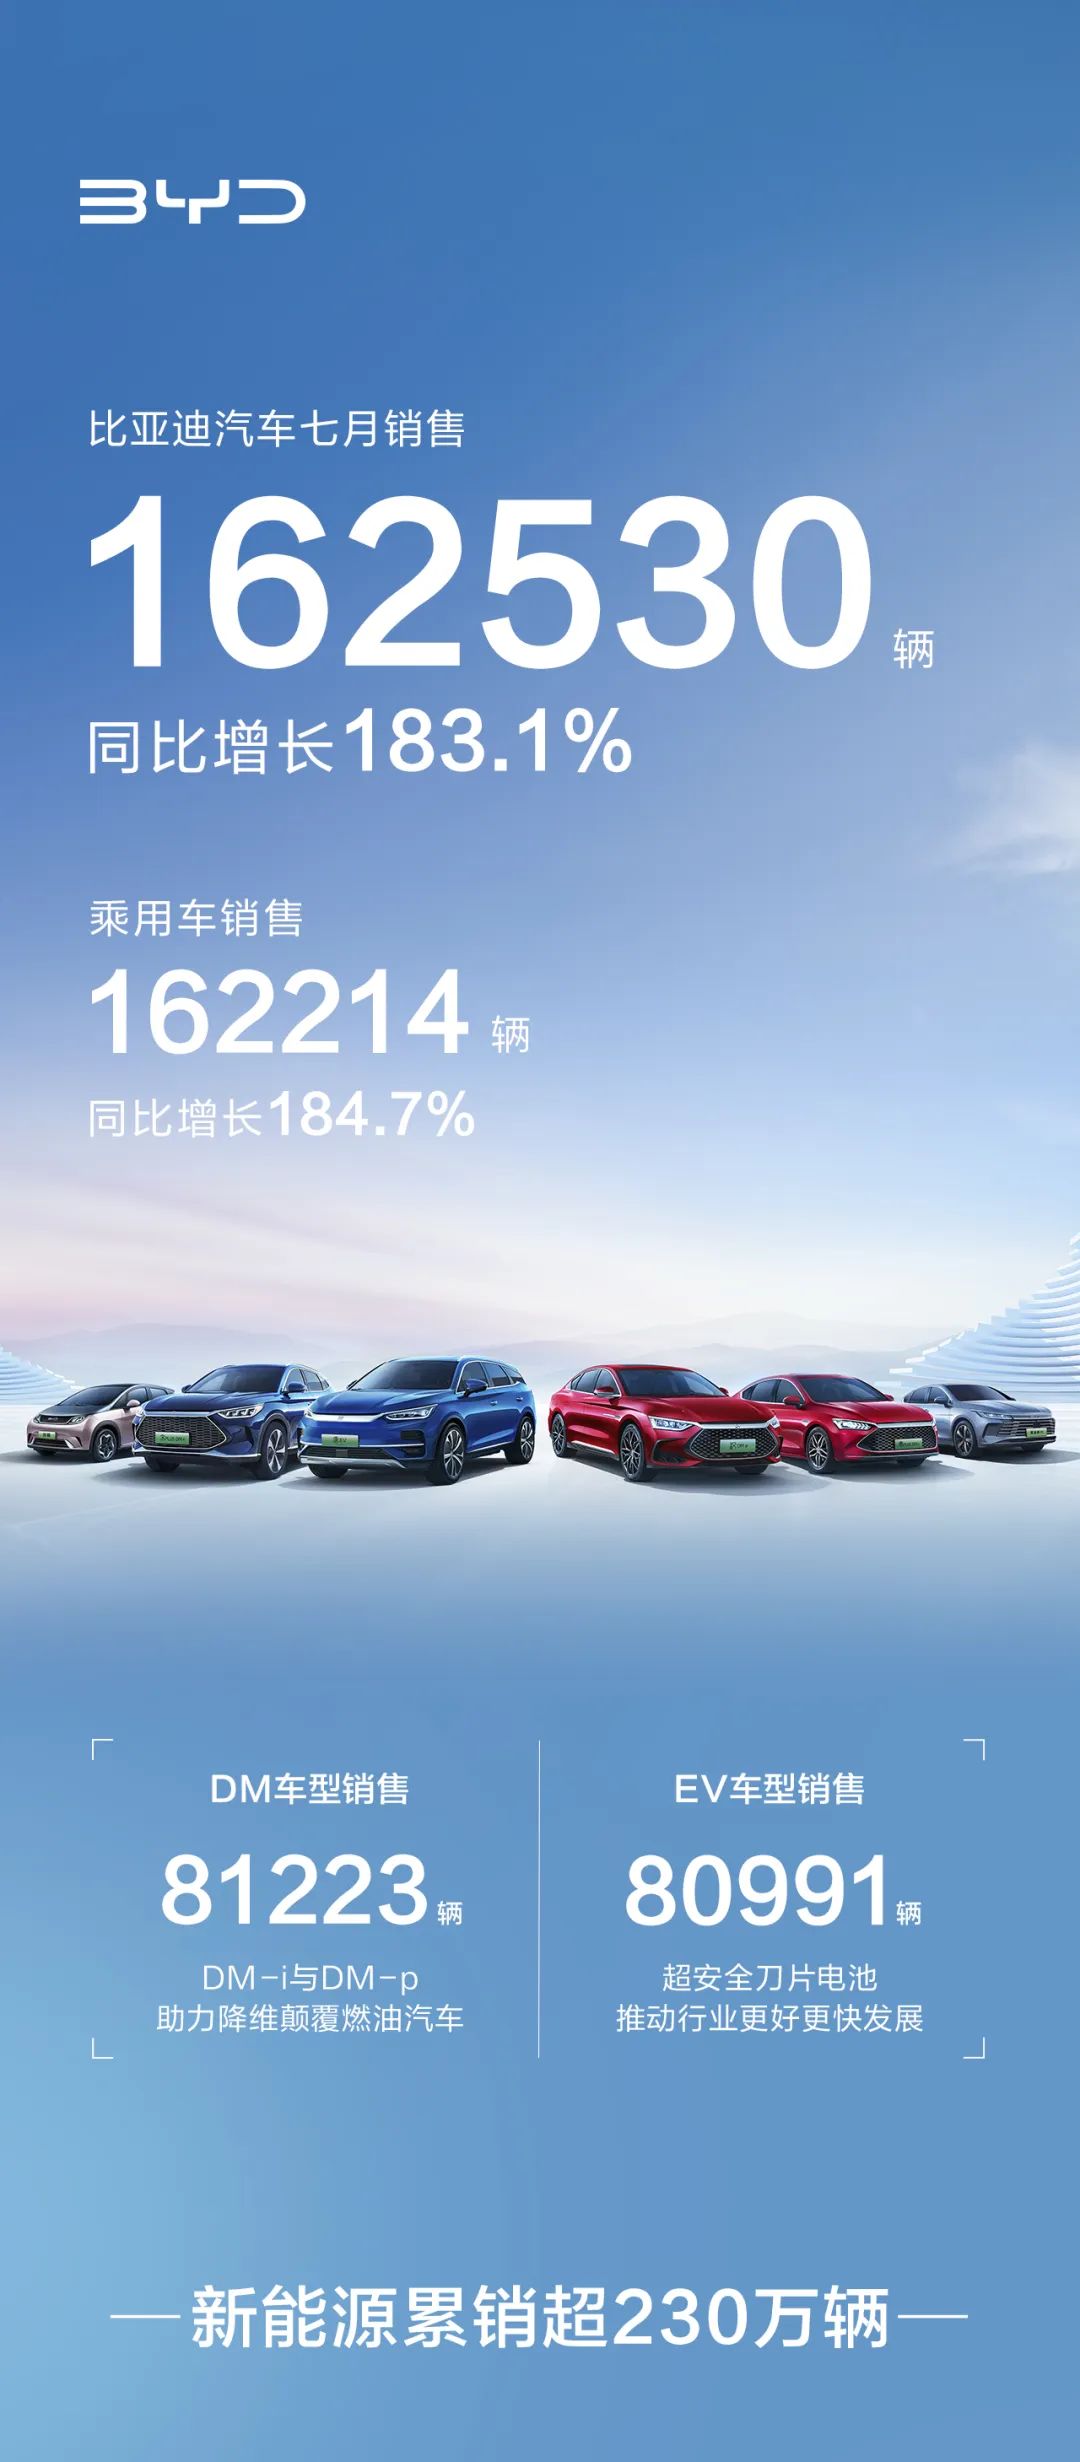 比亚迪汽车7月销售162530辆 同比增长183.1%,e7b3ae48-1339-11ed-ba43-dac502259ad0.jpg,第2张